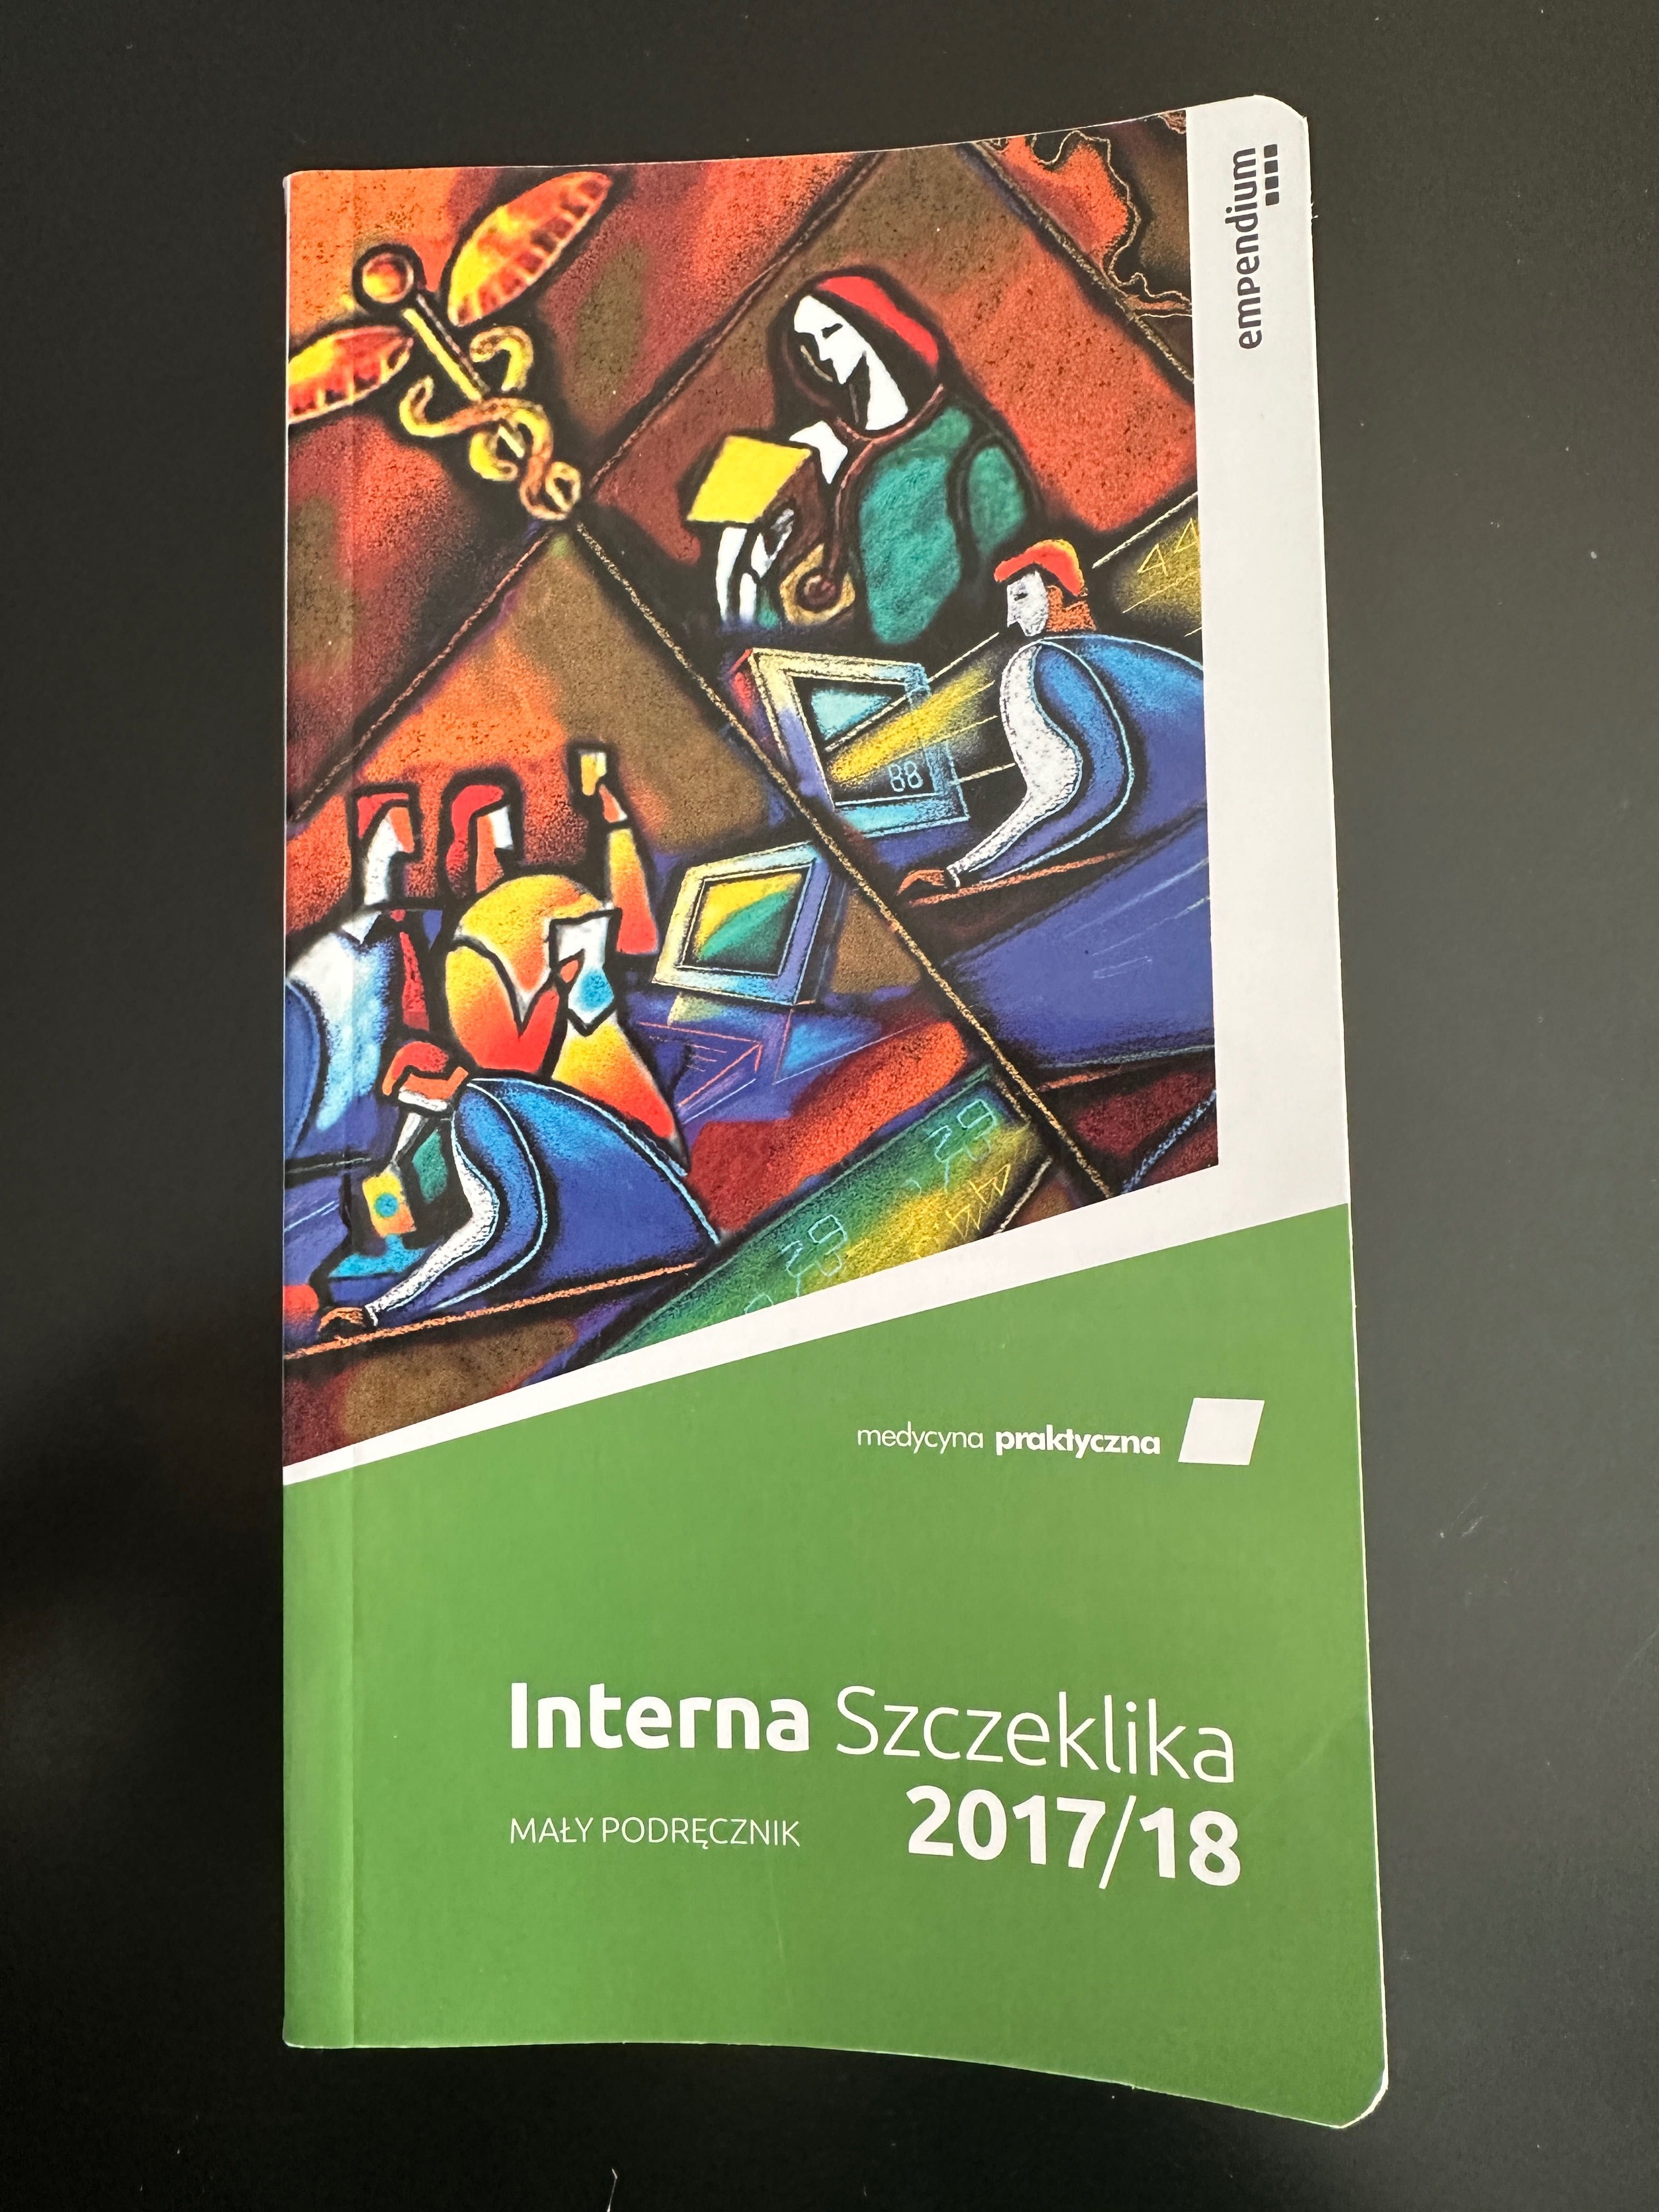 Interna Szczeklika 2017/18